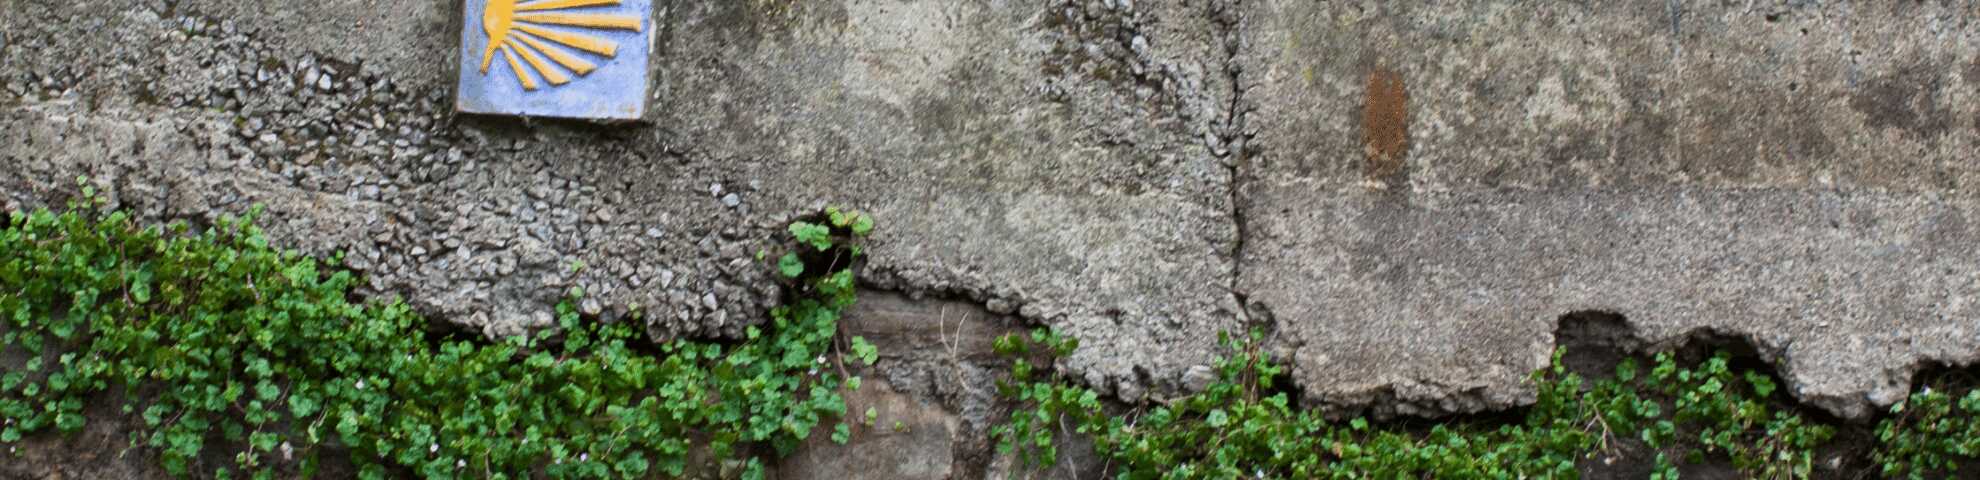 Una baldosa del Camino de Santiago en un muro de cemento